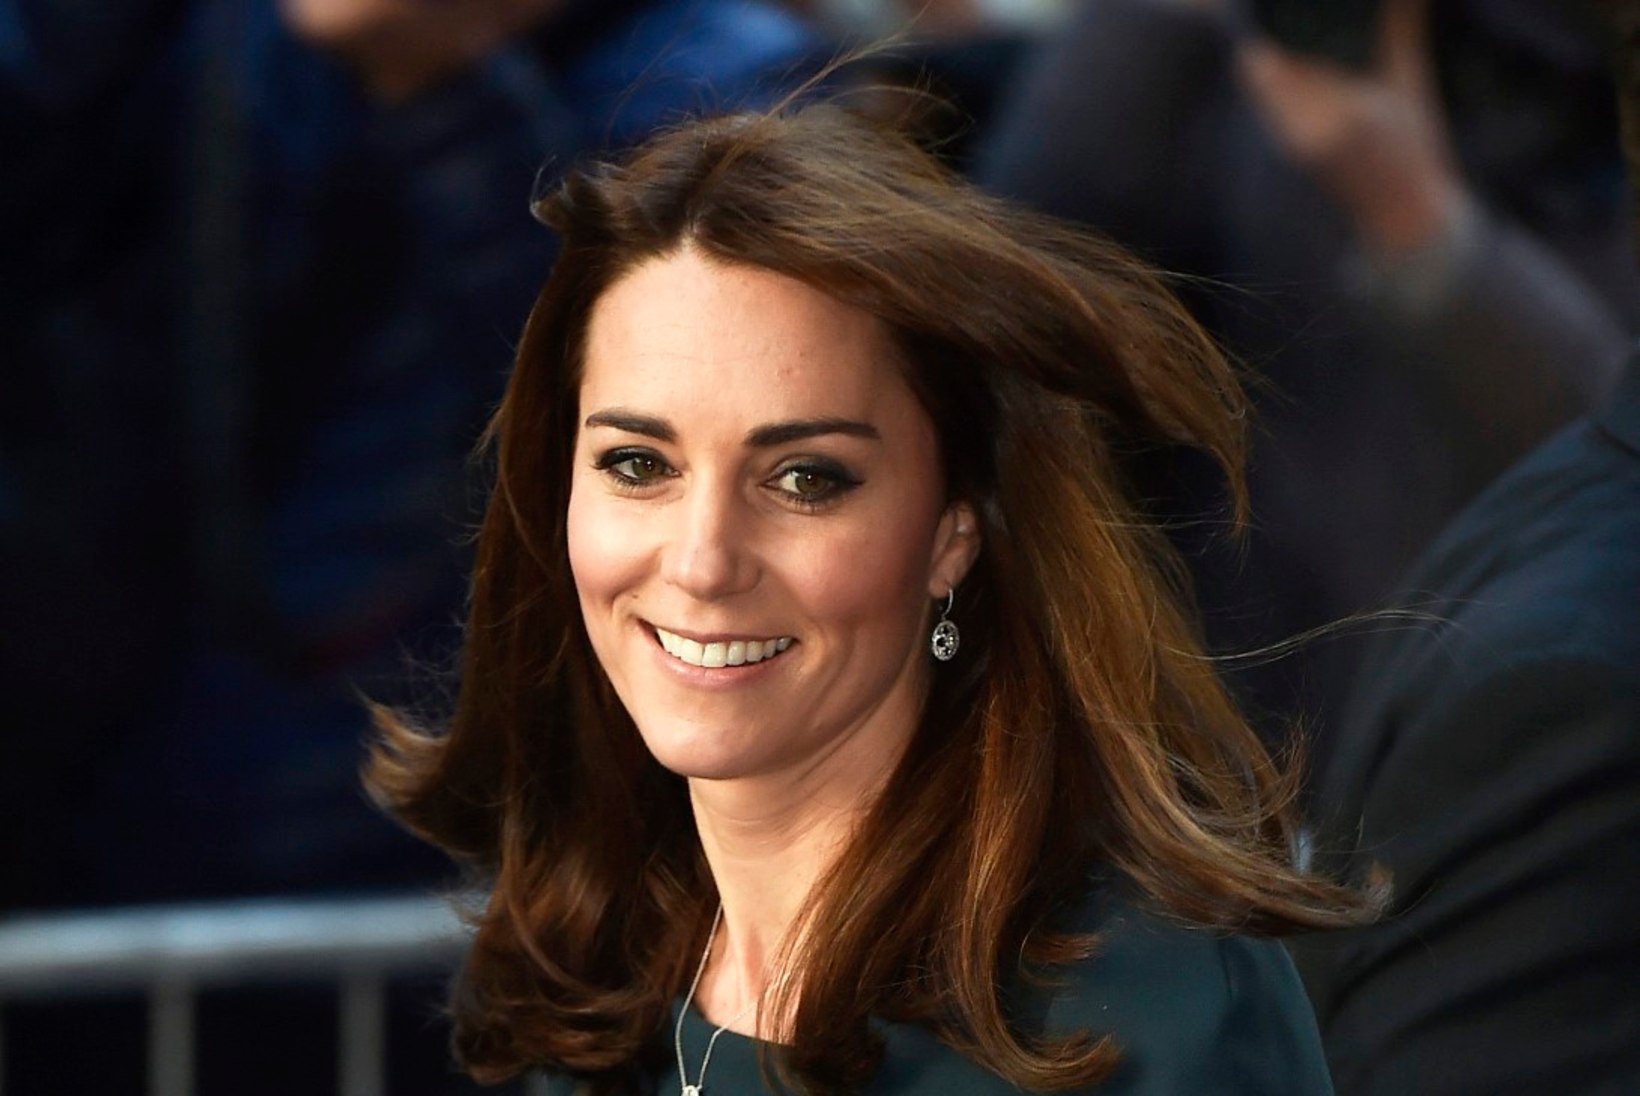 FOTOD | Hertsoginna Catherine näitas lühemaid juukseid